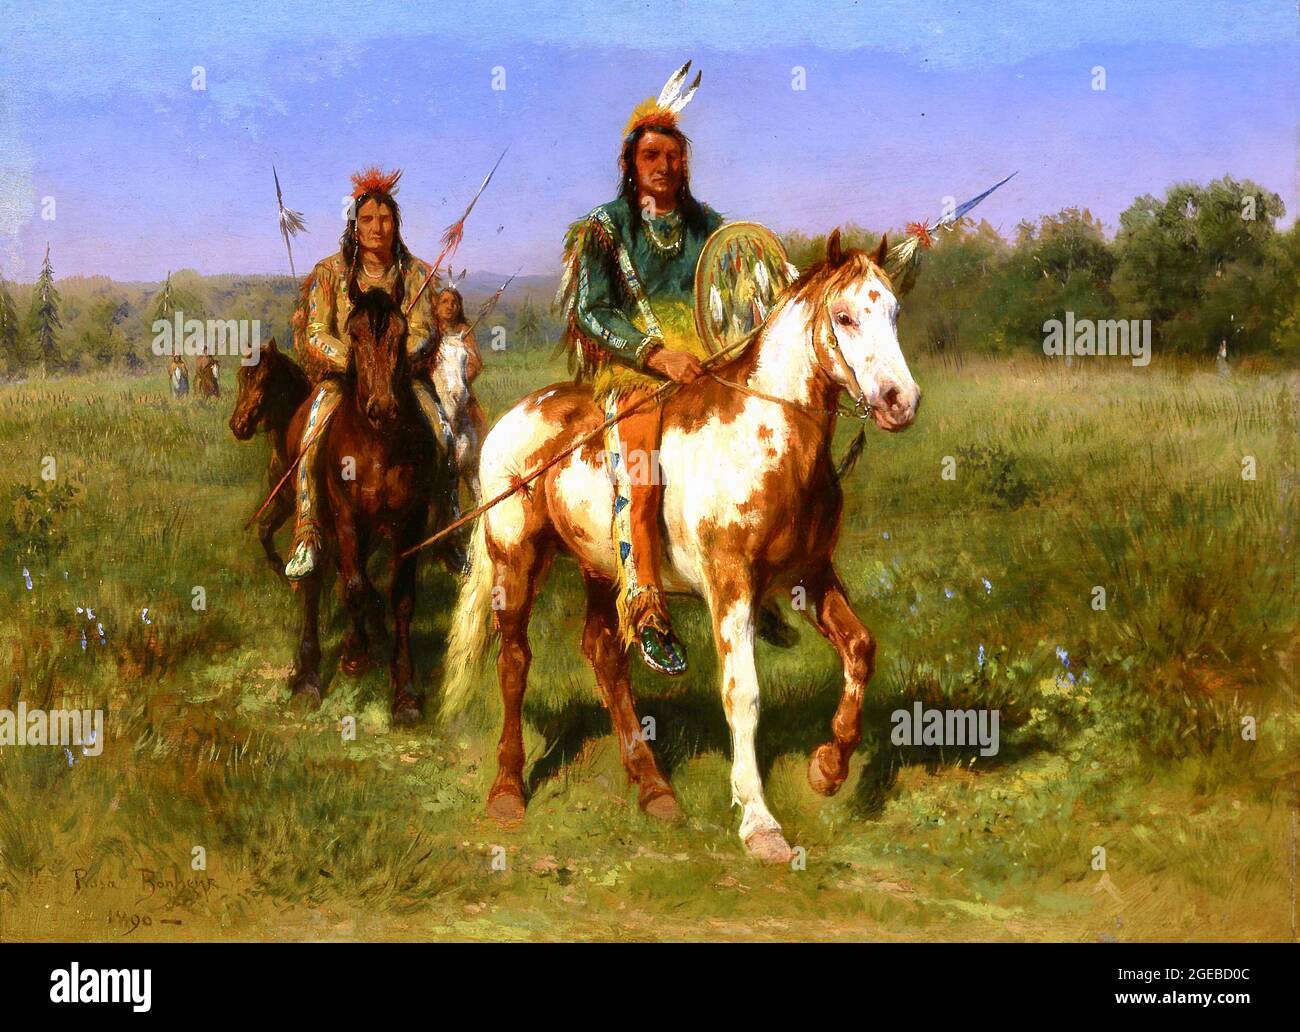 Rosa Bonheur - Mounted Indians Carrying Spears - Indiens à cheval armés de lances - 1890 Stock Photo